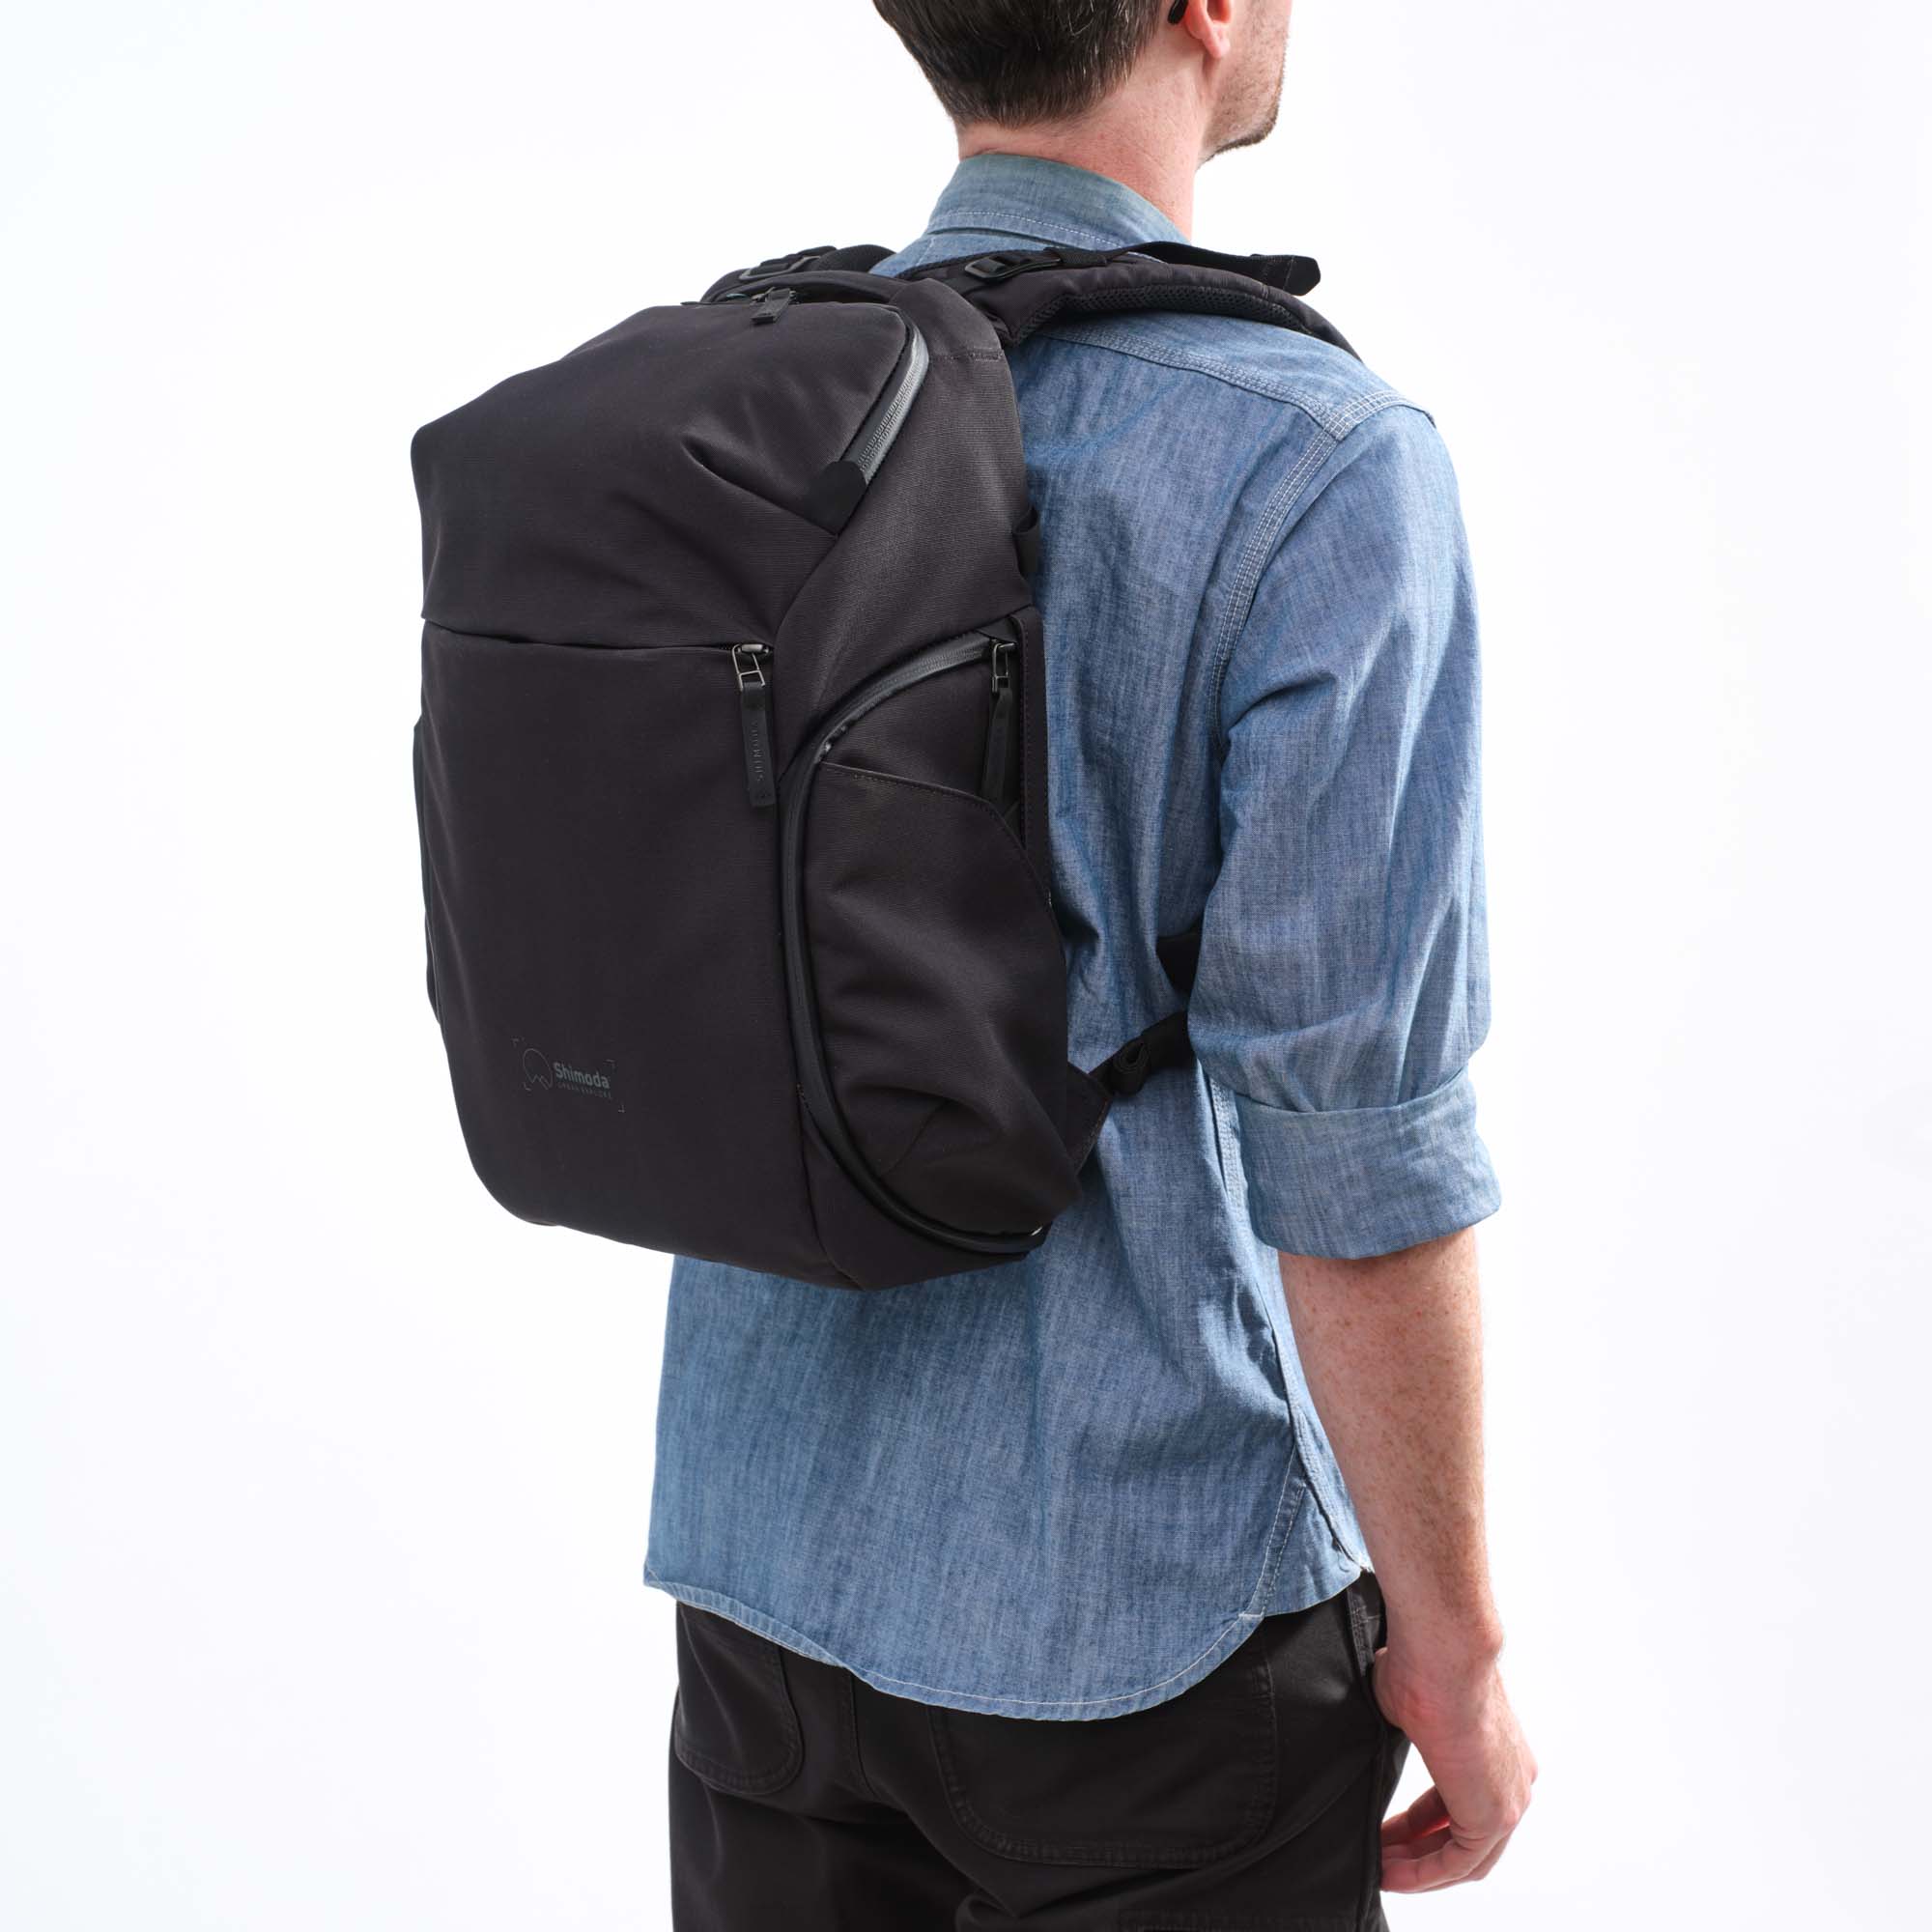 Shimoda Designs Explore 20 Rucksack in Anthraziit, Lifestyle Foto des Rucksacks auf Person